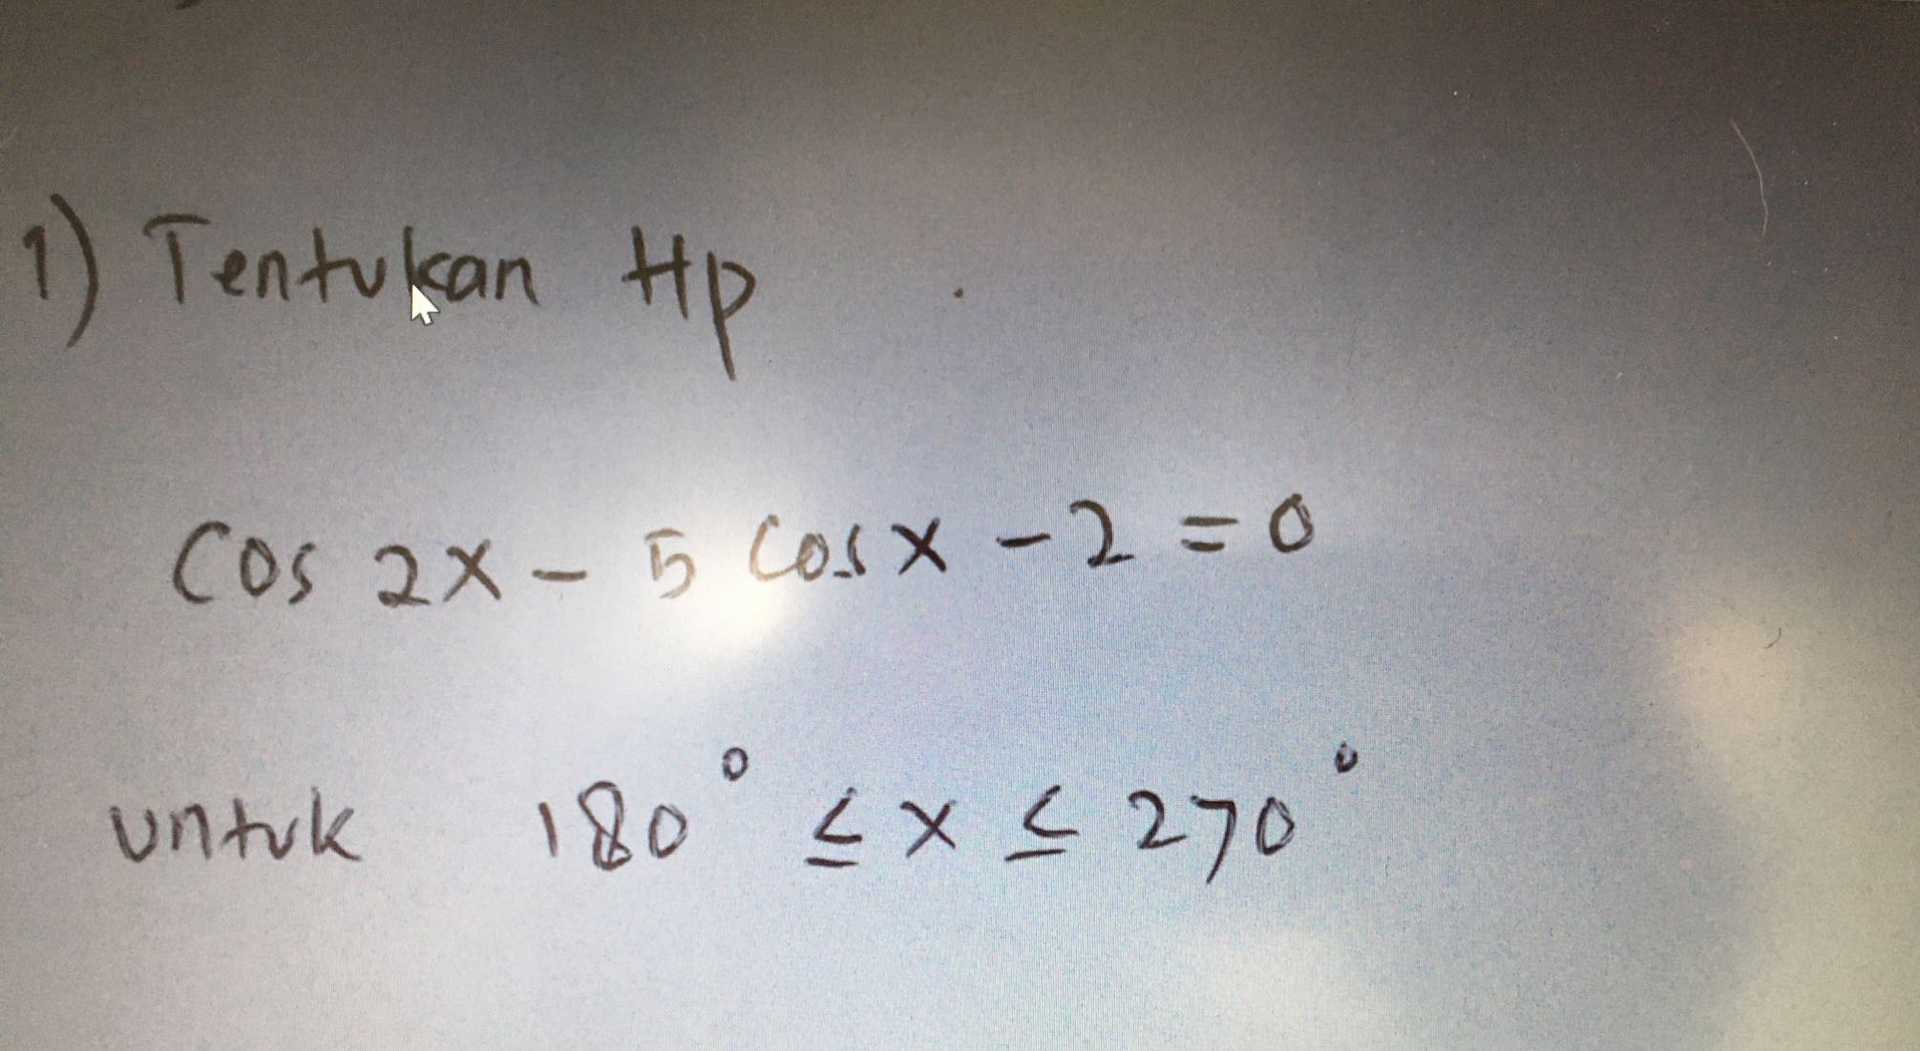 1) Tentukan tp Cos 2x - 5 cosx-2=0 untuk 180 cх4 270" 